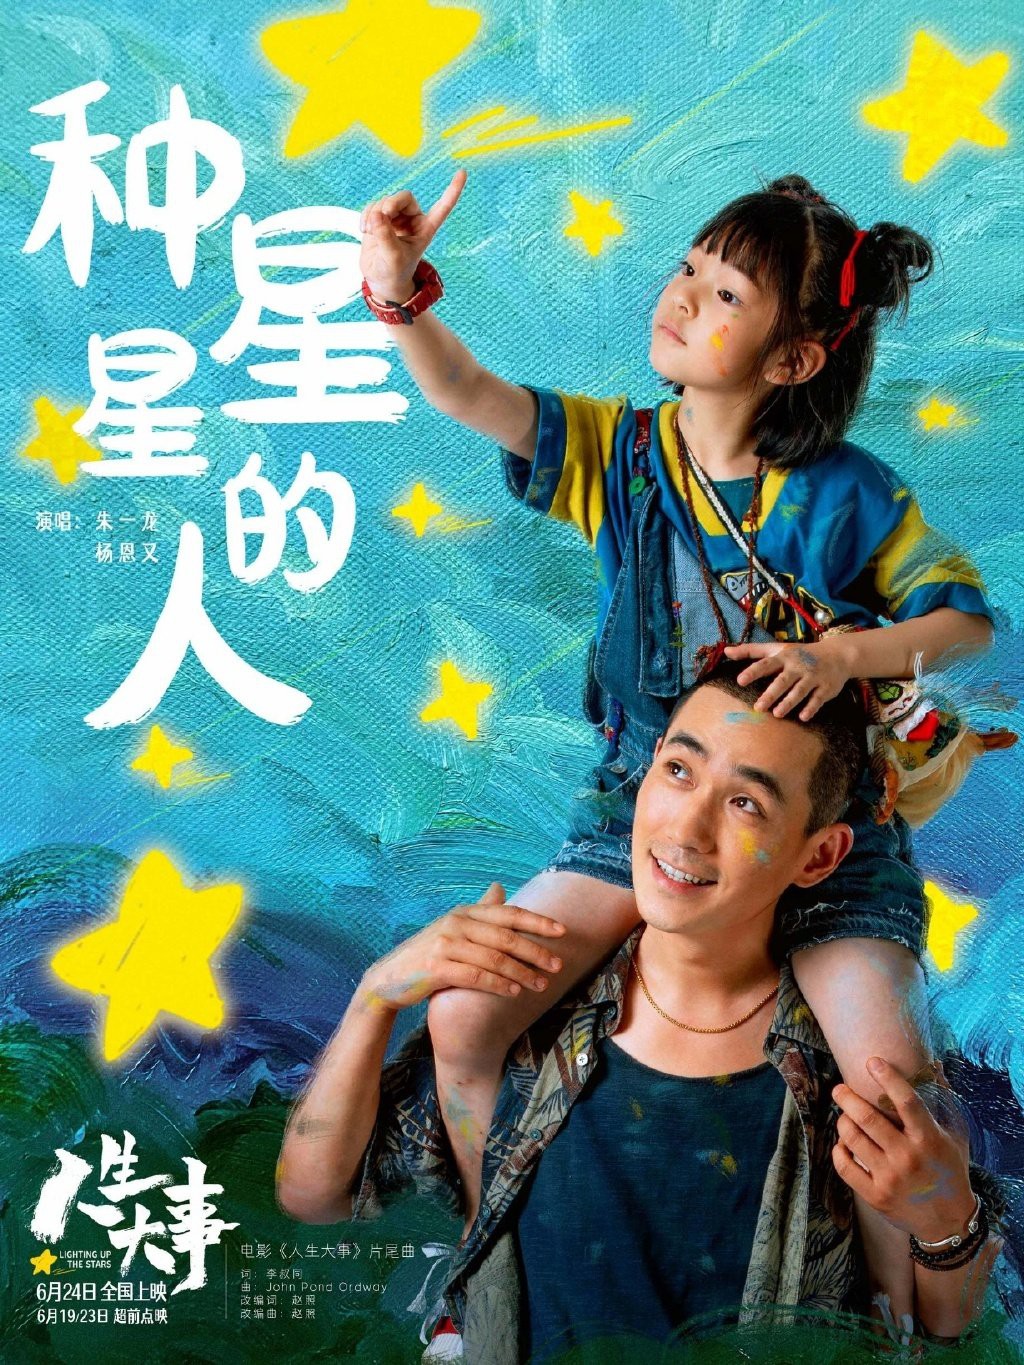 Phim điện ảnh của Chu Nhất Long - Nhân Sinh Đại Sự thành công thu về doanh thu gần 1 tỷ NDT sau 13 ngày ra rạp